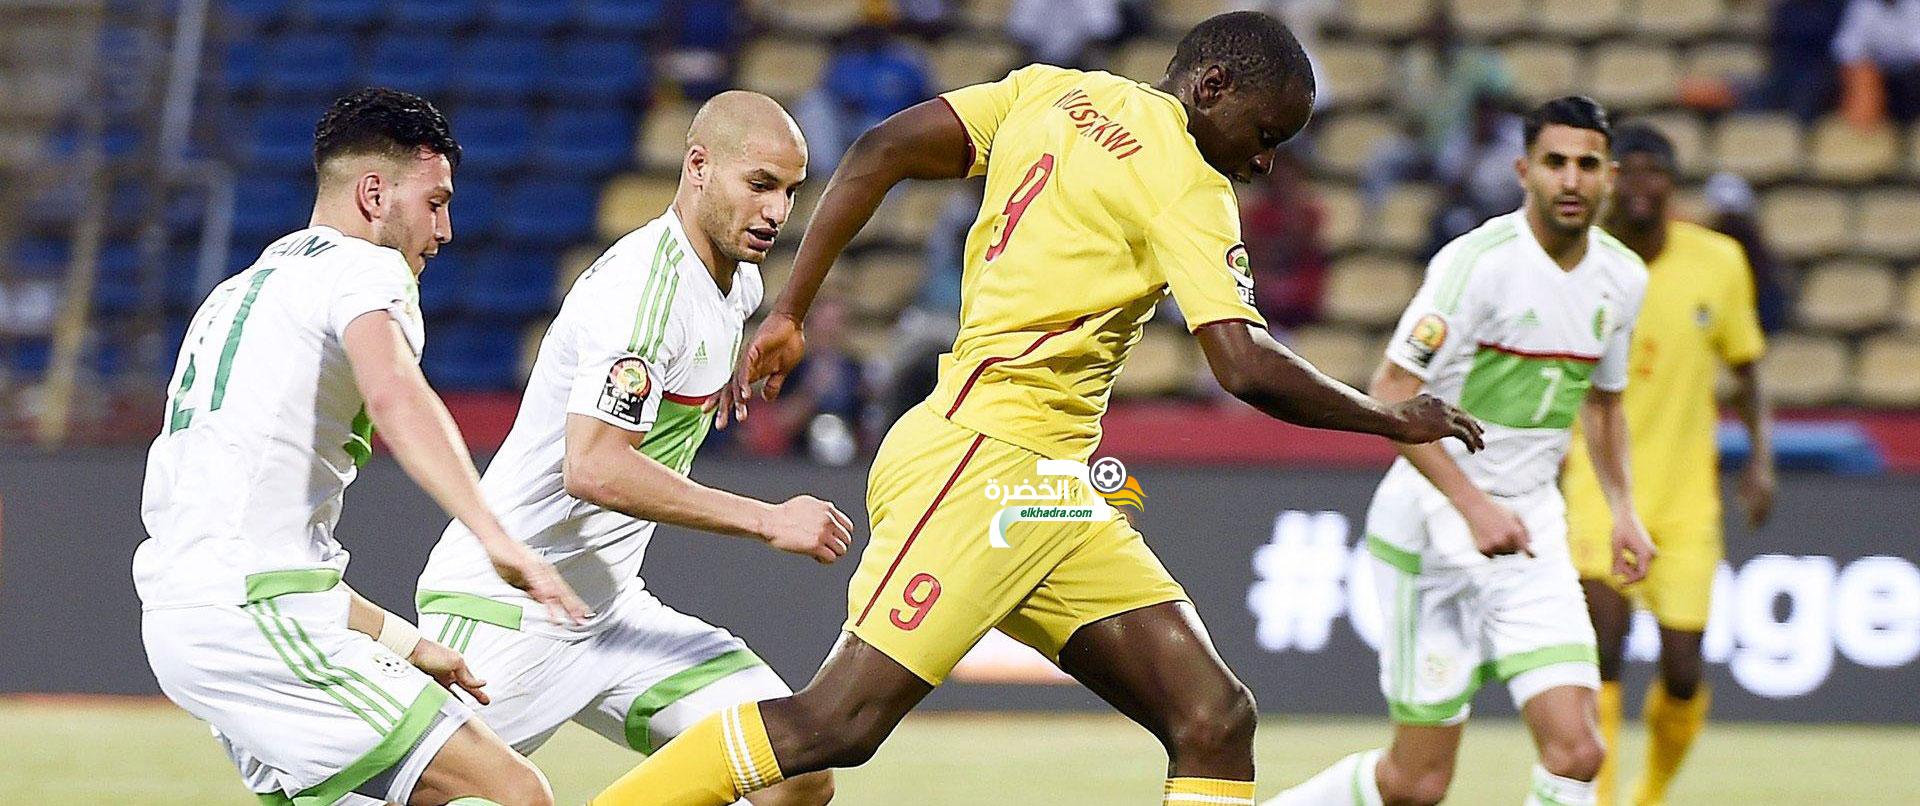 الجزائر - مالي : آخر اختبار لتشكيلة "الخضر" تحسبا لكأس أمم إفريقيا 2019 1